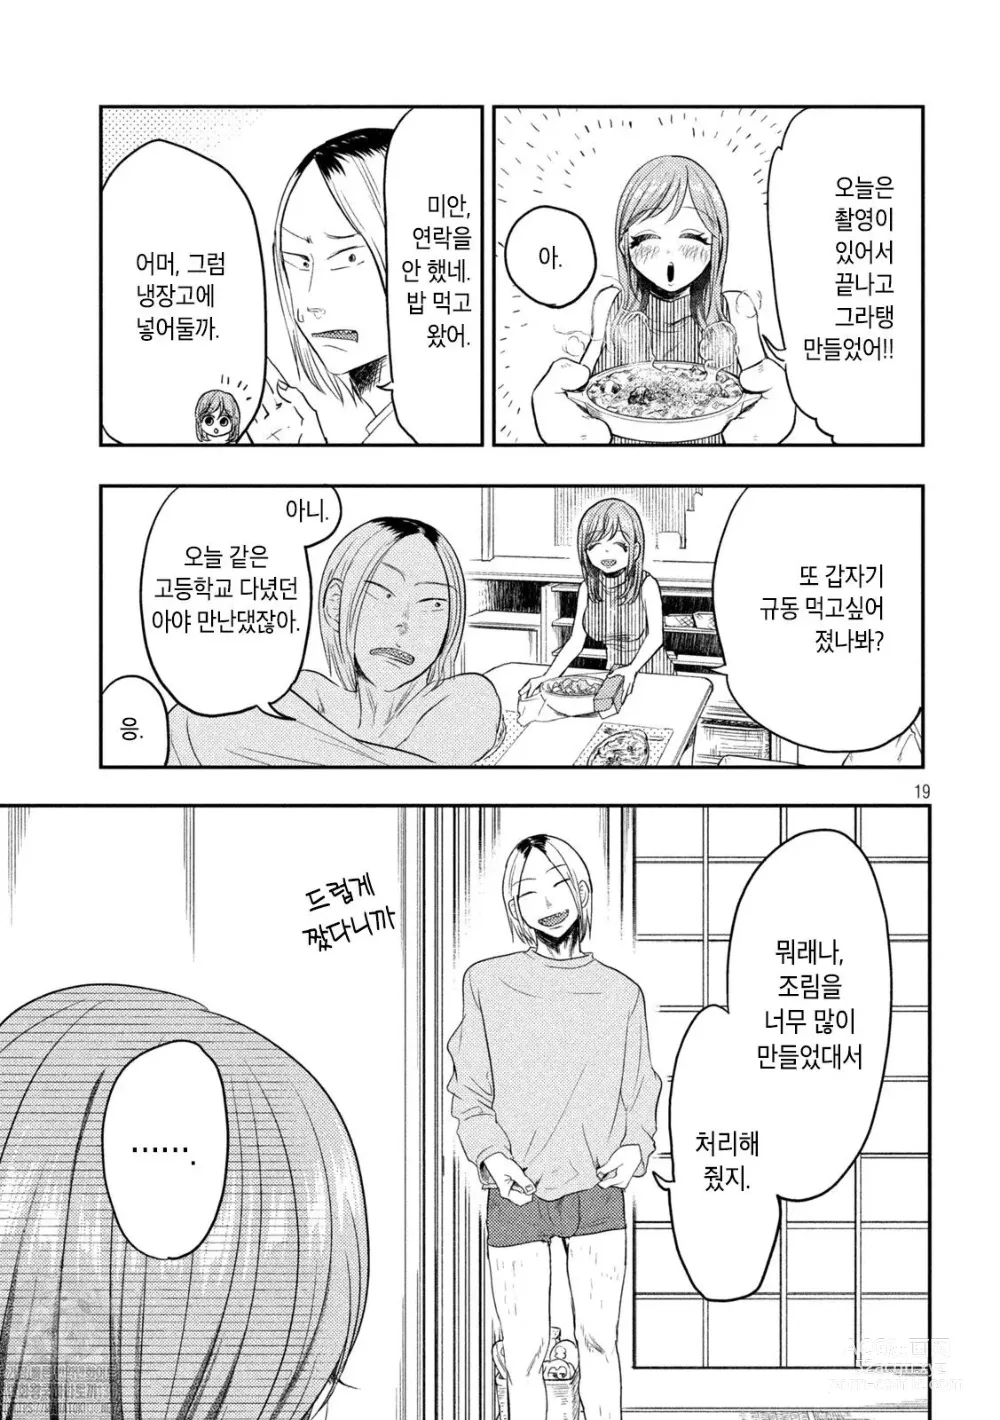 Page 19 of manga Haha wa Tsuyoi.